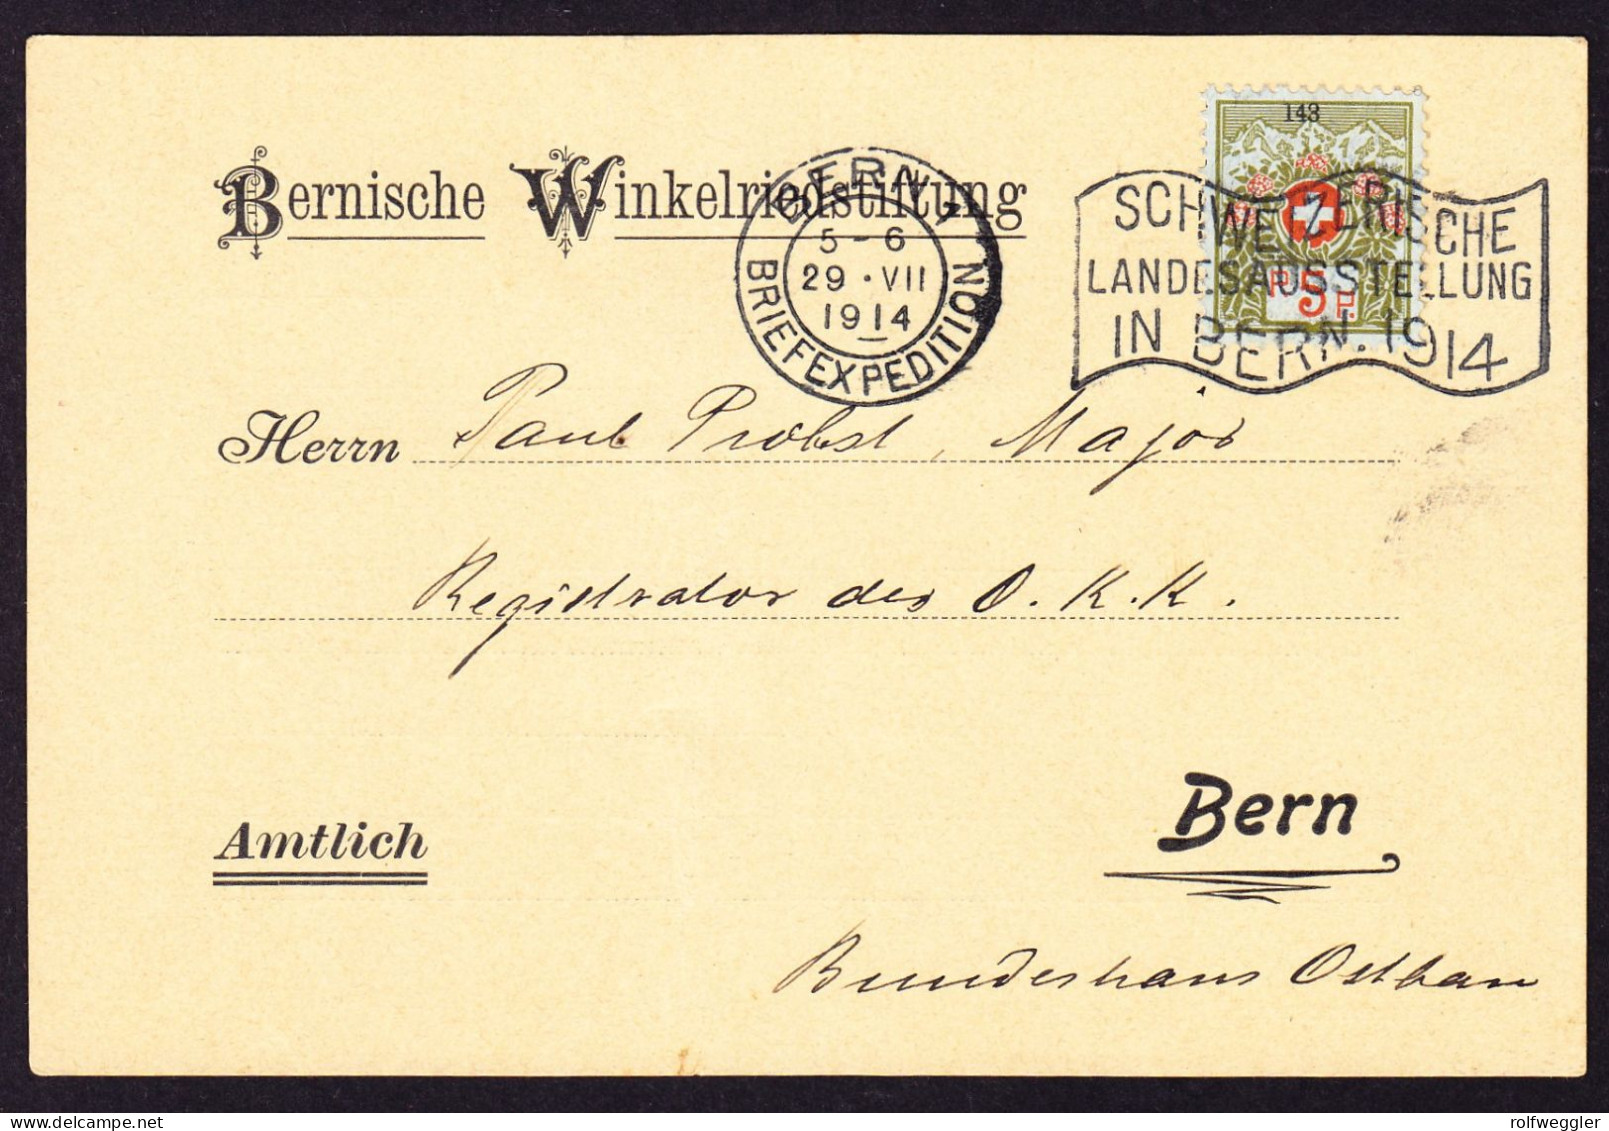 1914 5 Rp Marke Mit Kleiner Nummer Mit Landesausstellung Bern Stempel Auf Karte: Bernische Winkelriedstiftung - Portofreiheit